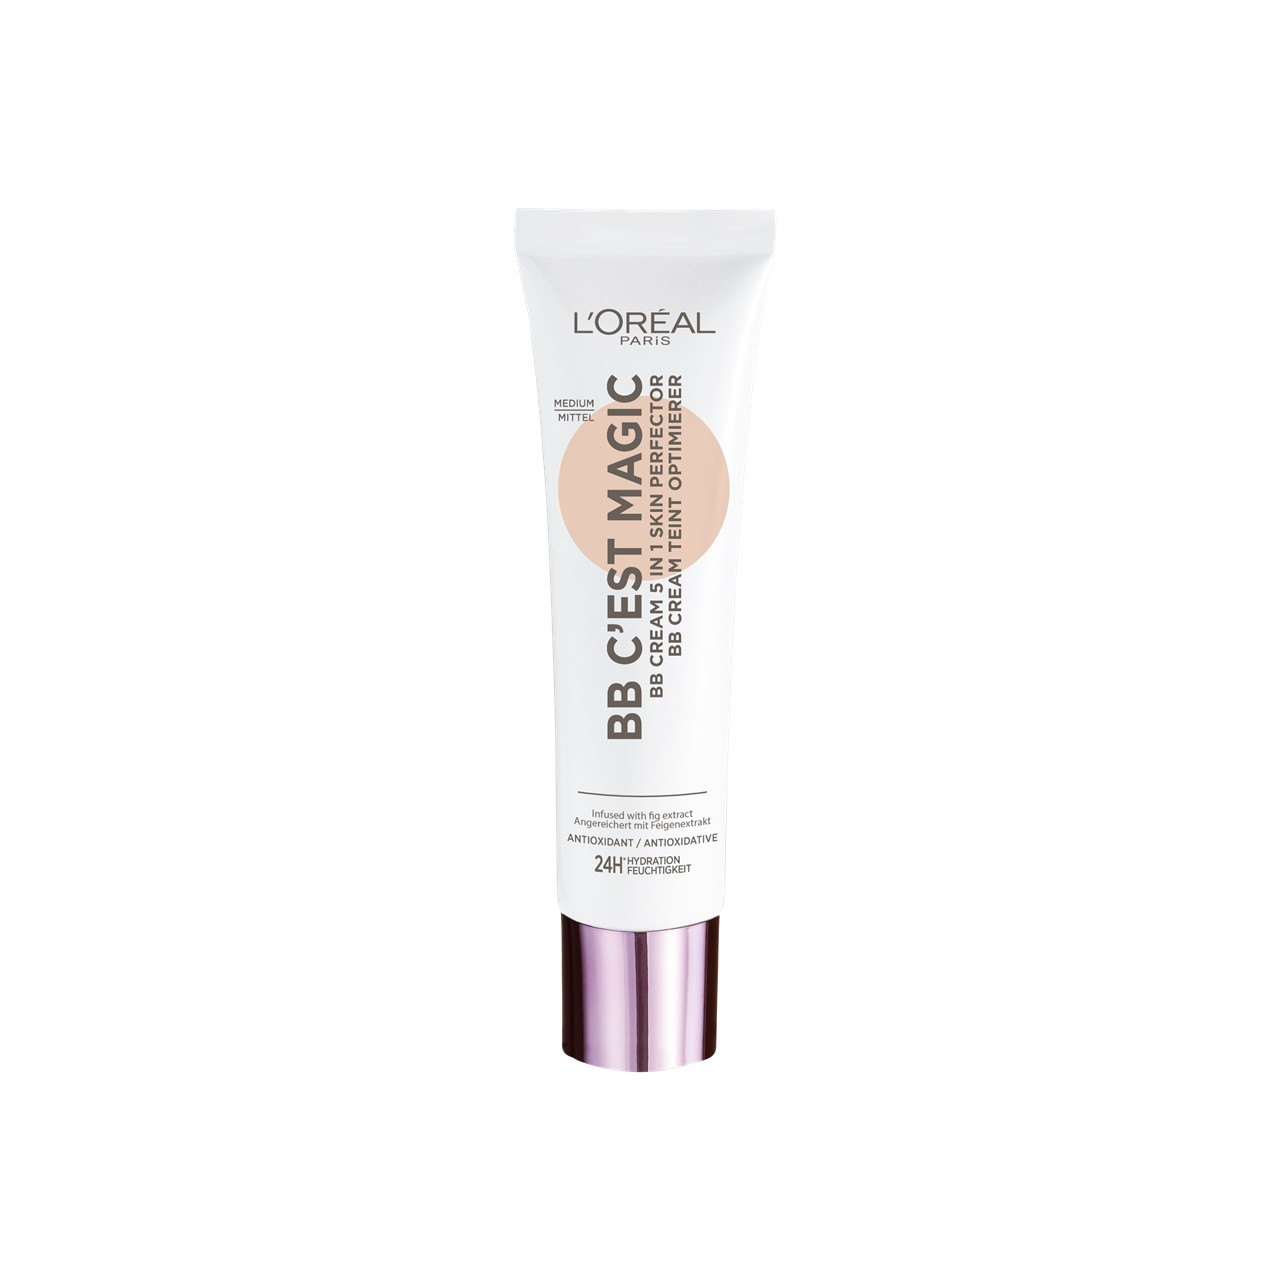 L'Oréal Paris C'est Magic BB Cream 04 Medium 30ml (1.01fl oz)